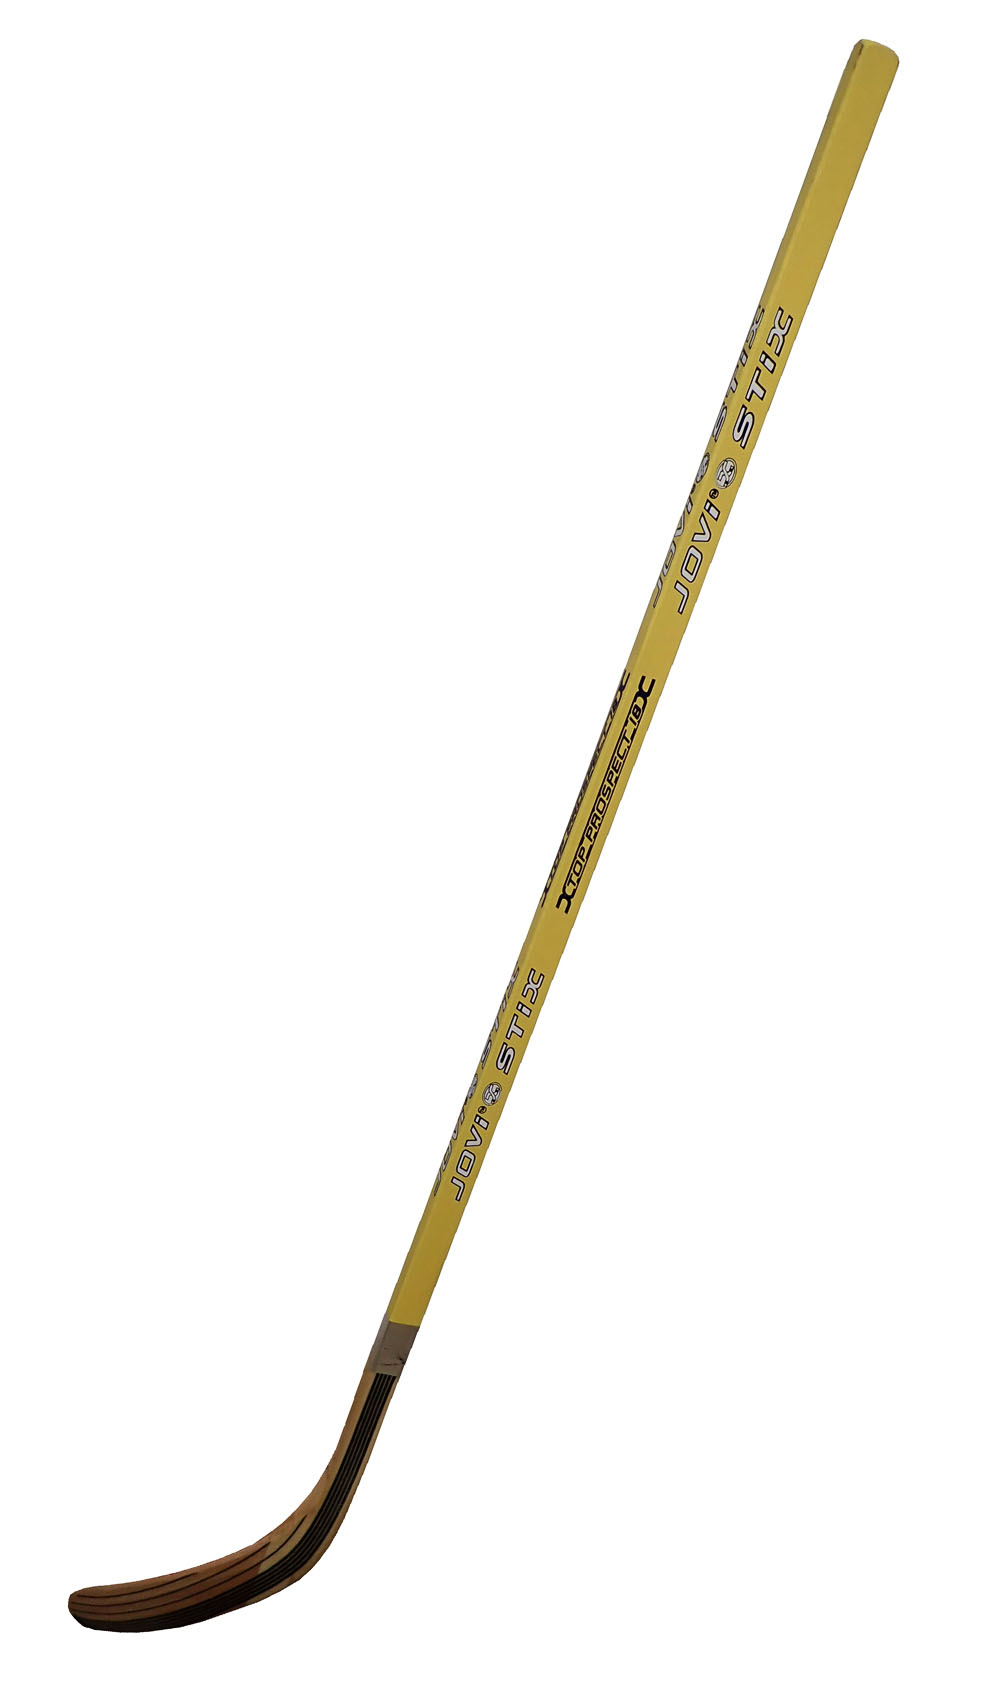 Laminovaná hokejka pravá 125 cm - žlutá